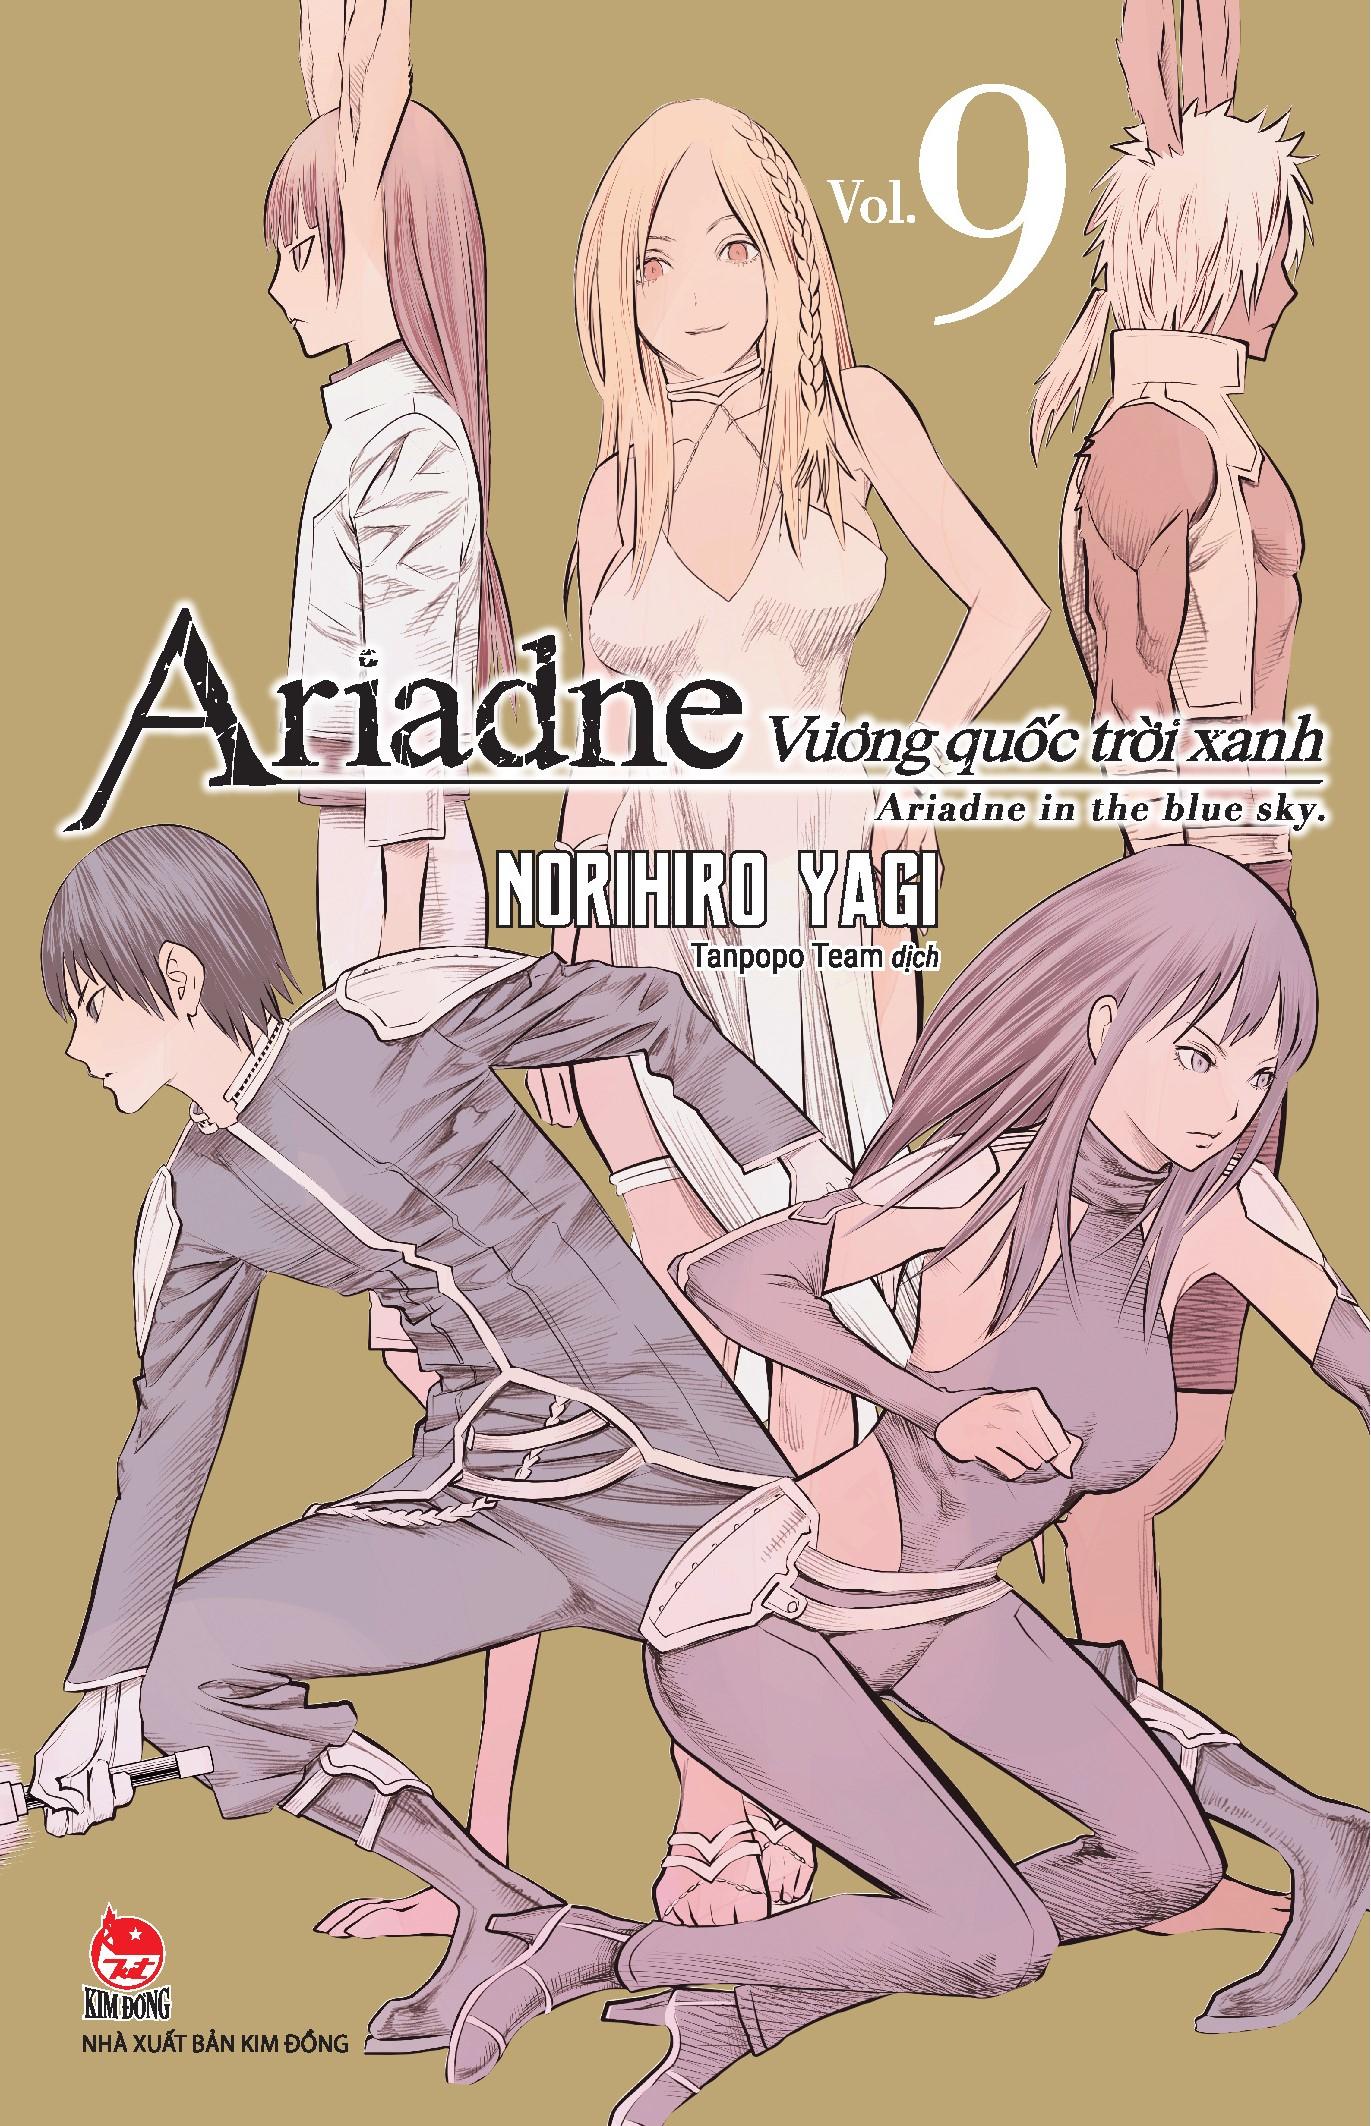 Vương Quốc Trời Xanh Ariadne - Ariadne In The Blue Sky - Tập 9 - Tặng Kèm Postcard Lịch